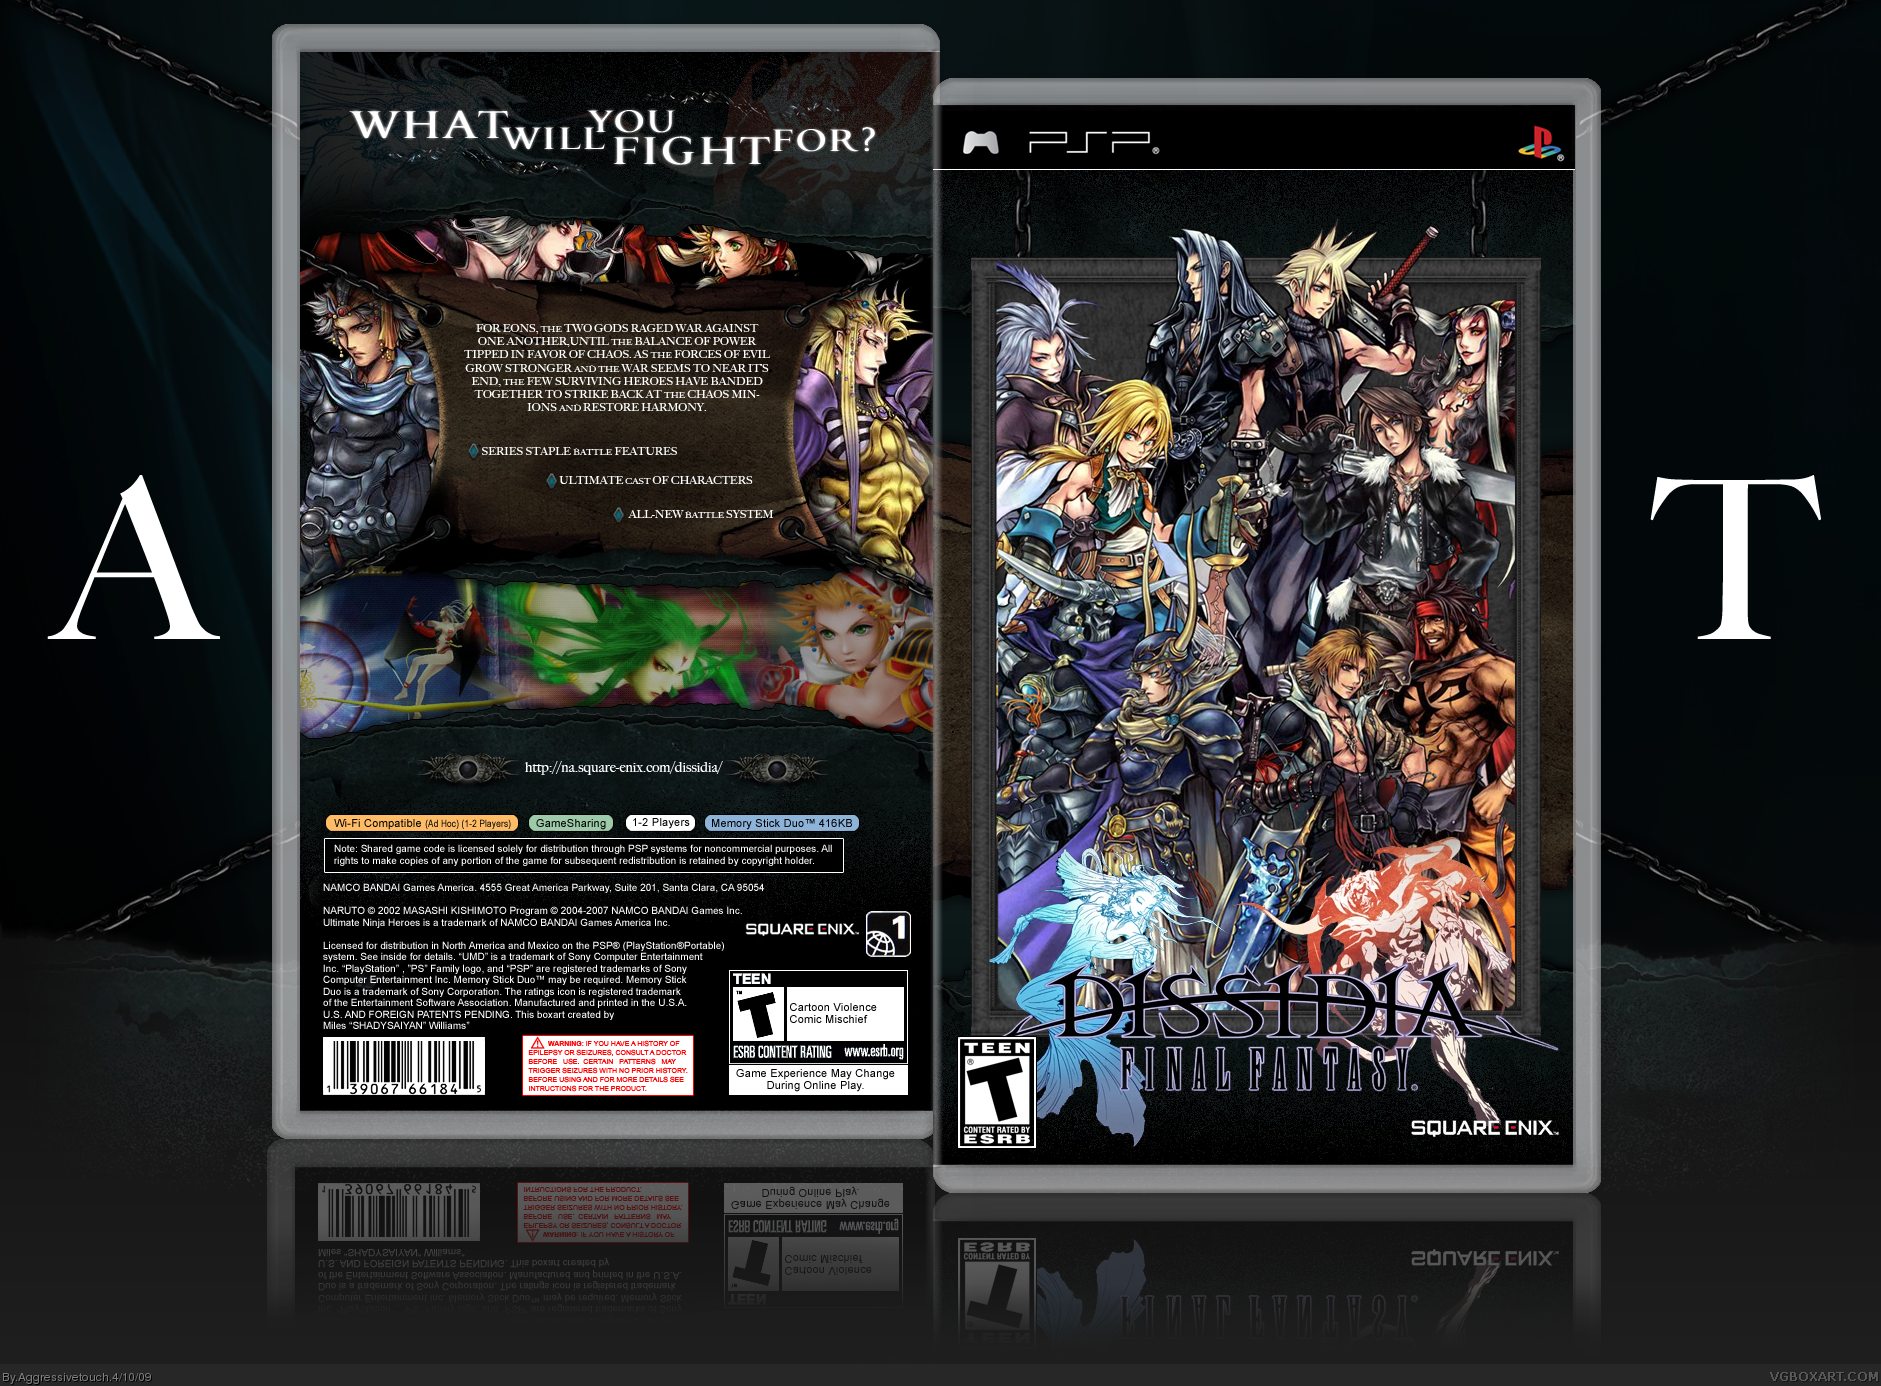 Dissida: Final Fantasy box cover